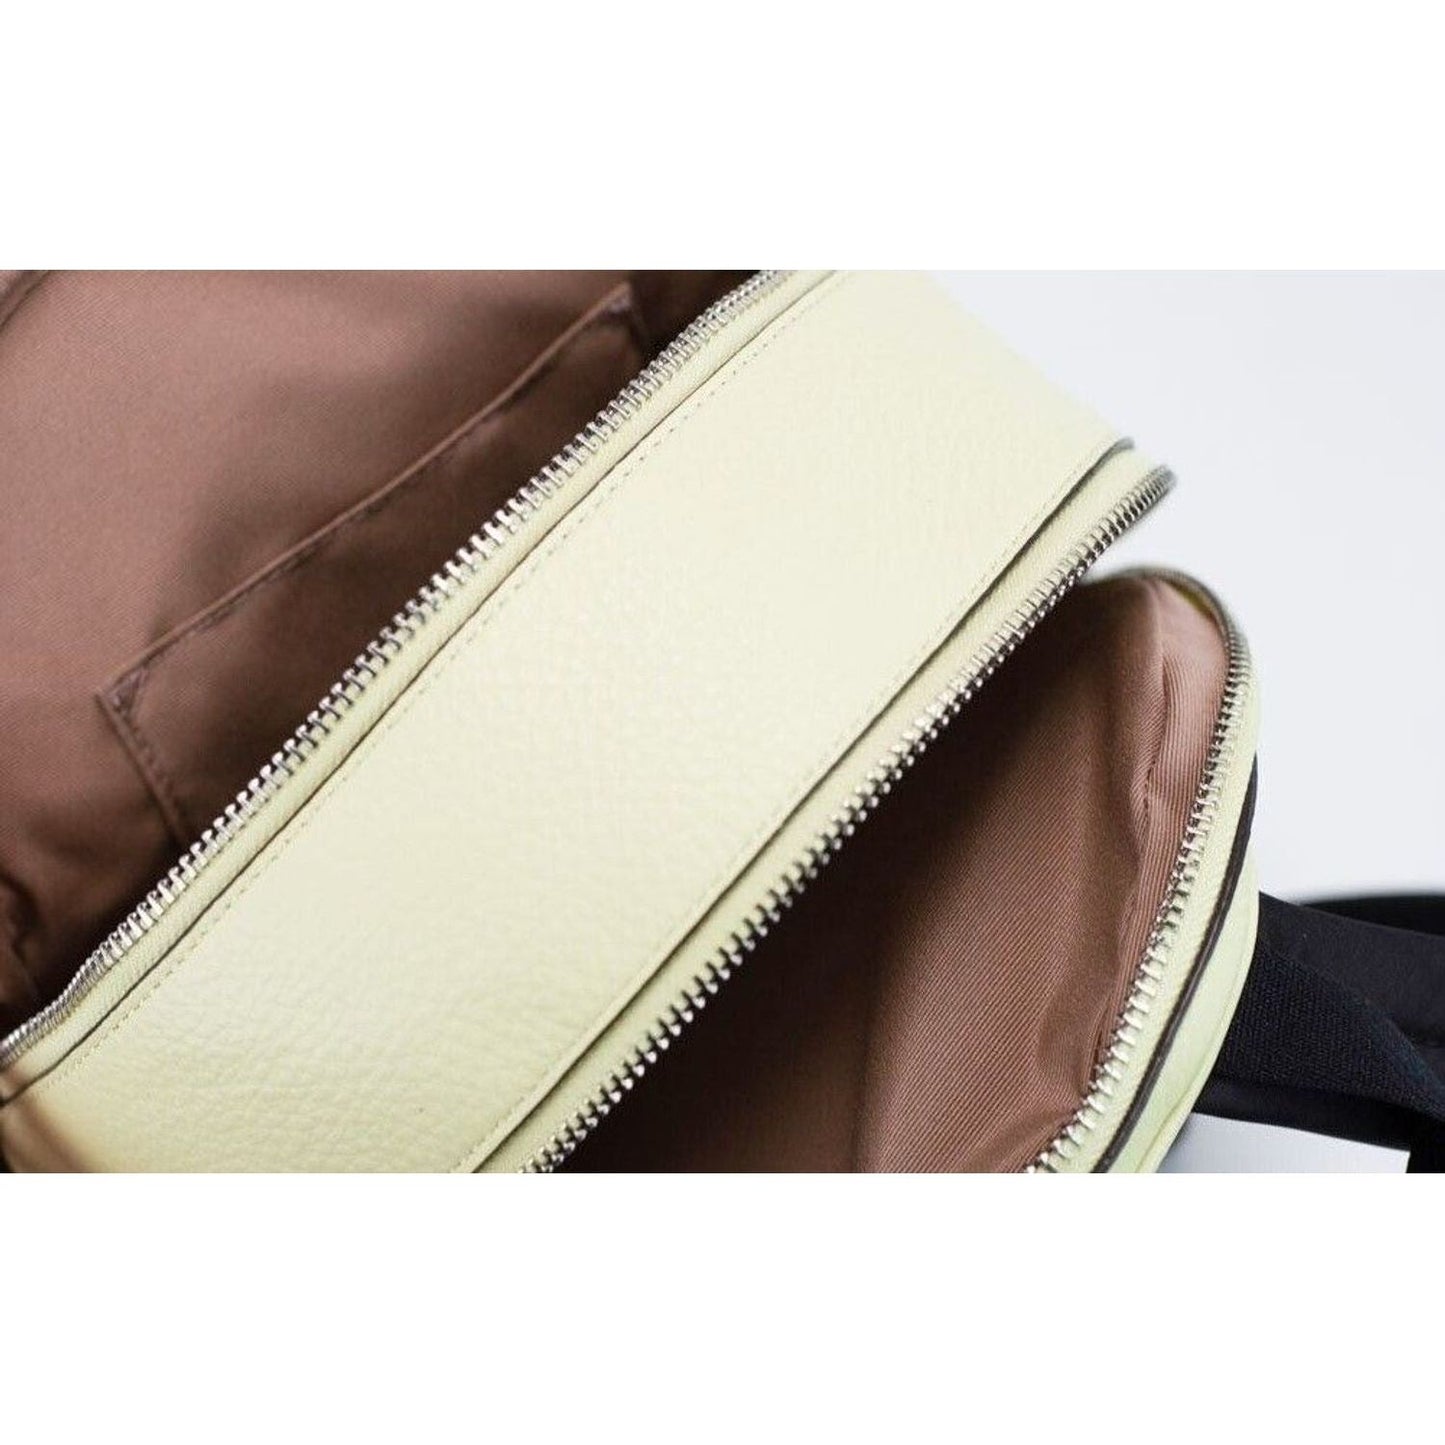 COACHMini Court Pale Lime Pebbled Leather Shoulder Backpack BagMcRichard Designer Brands£349.00